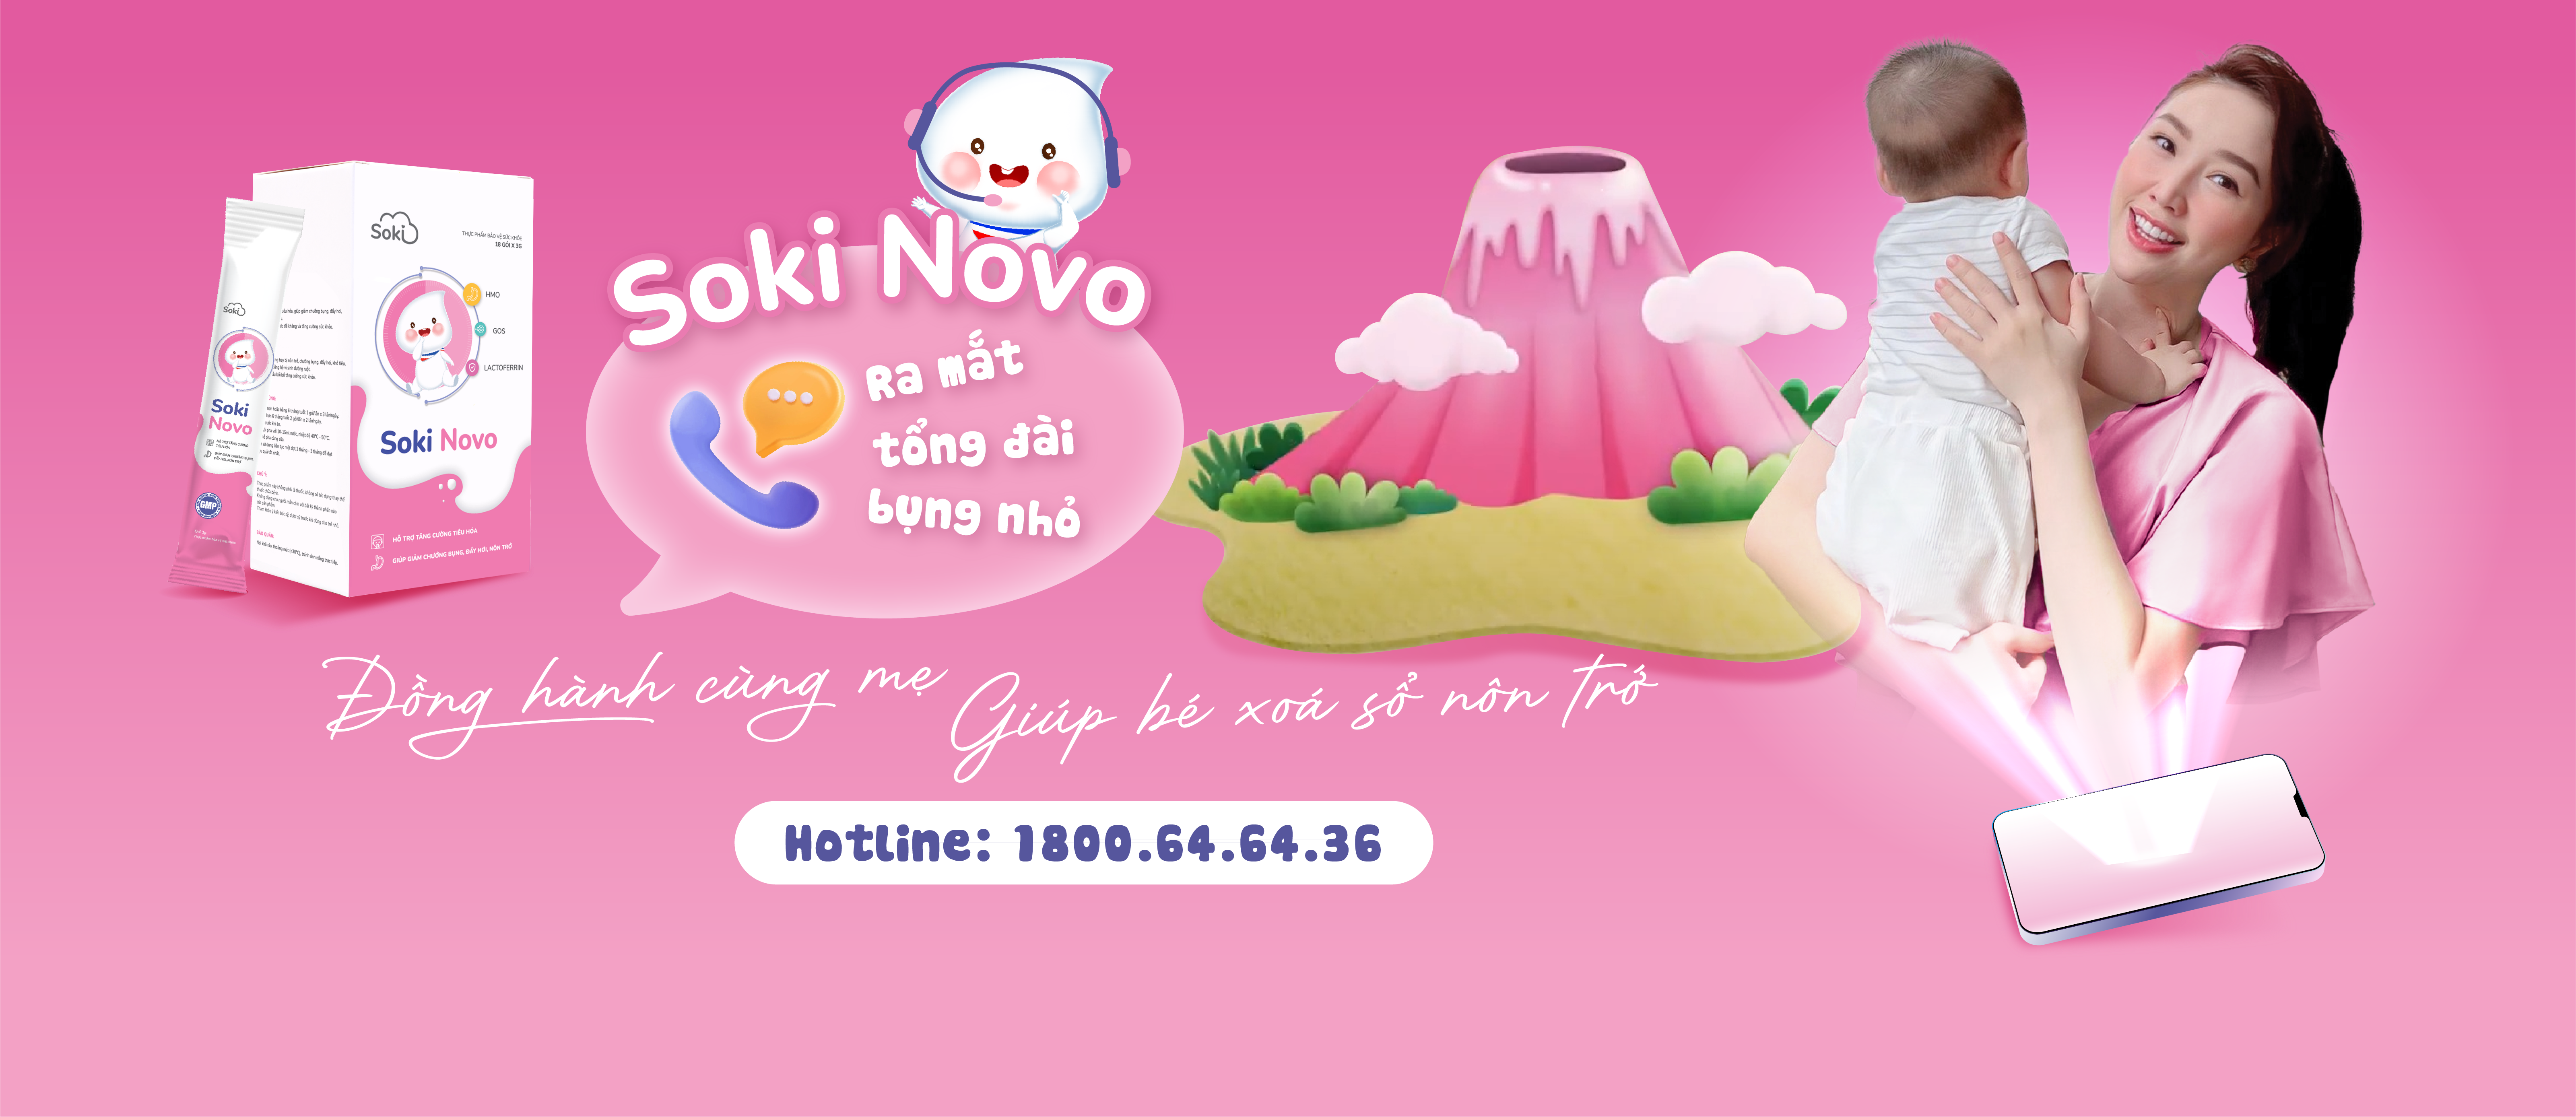 Soki Novo ra mắt tổng đài bụng nhỏ - Giúp con xoá sổ nôn trớ